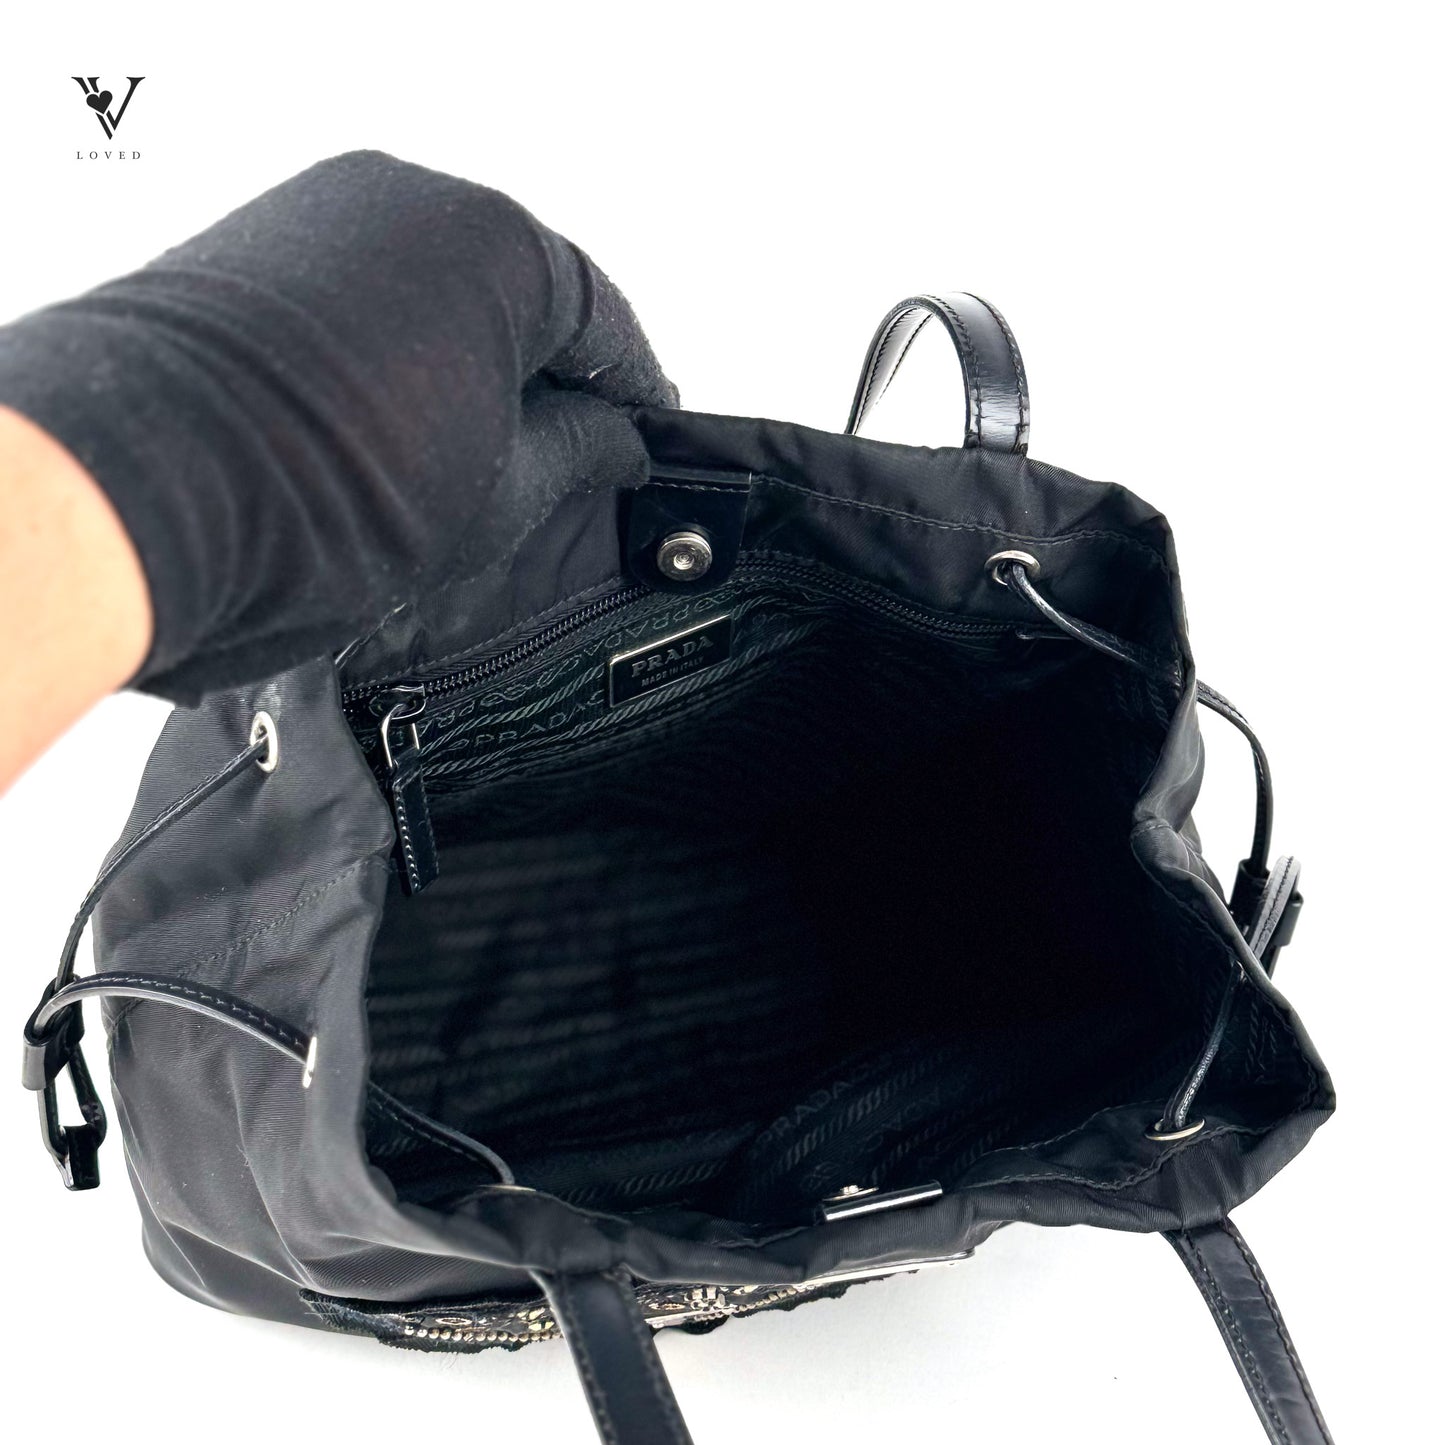 Nylon Handbag (Nero Triangle Embroidered Design)